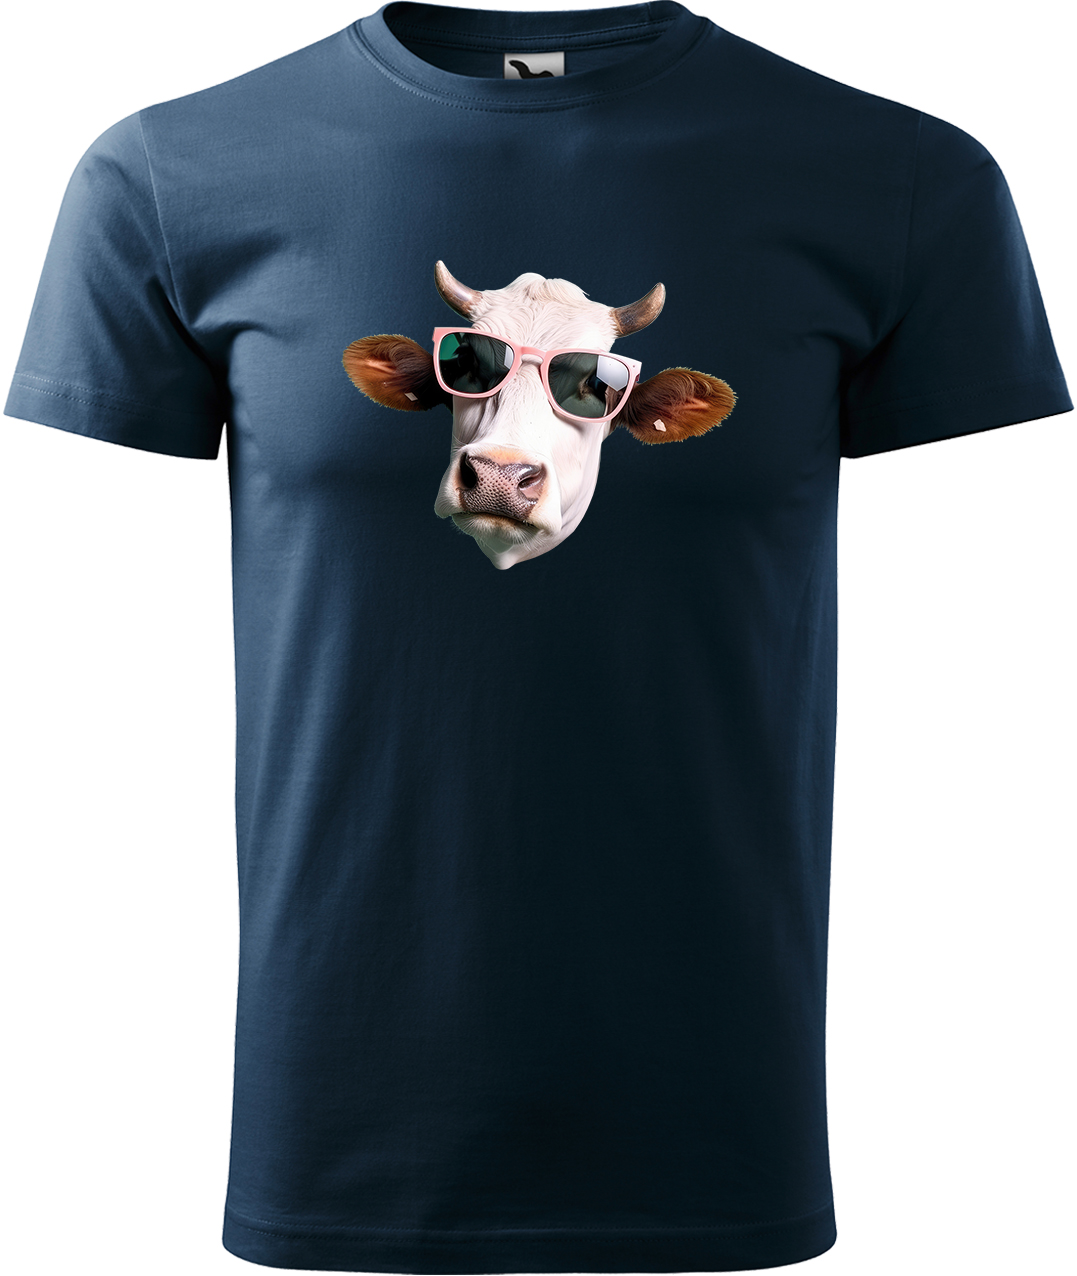 Pánské tričko s krávou - Kráva v brýlích Velikost: XL, Barva: Námořní modrá (02), Střih: pánský